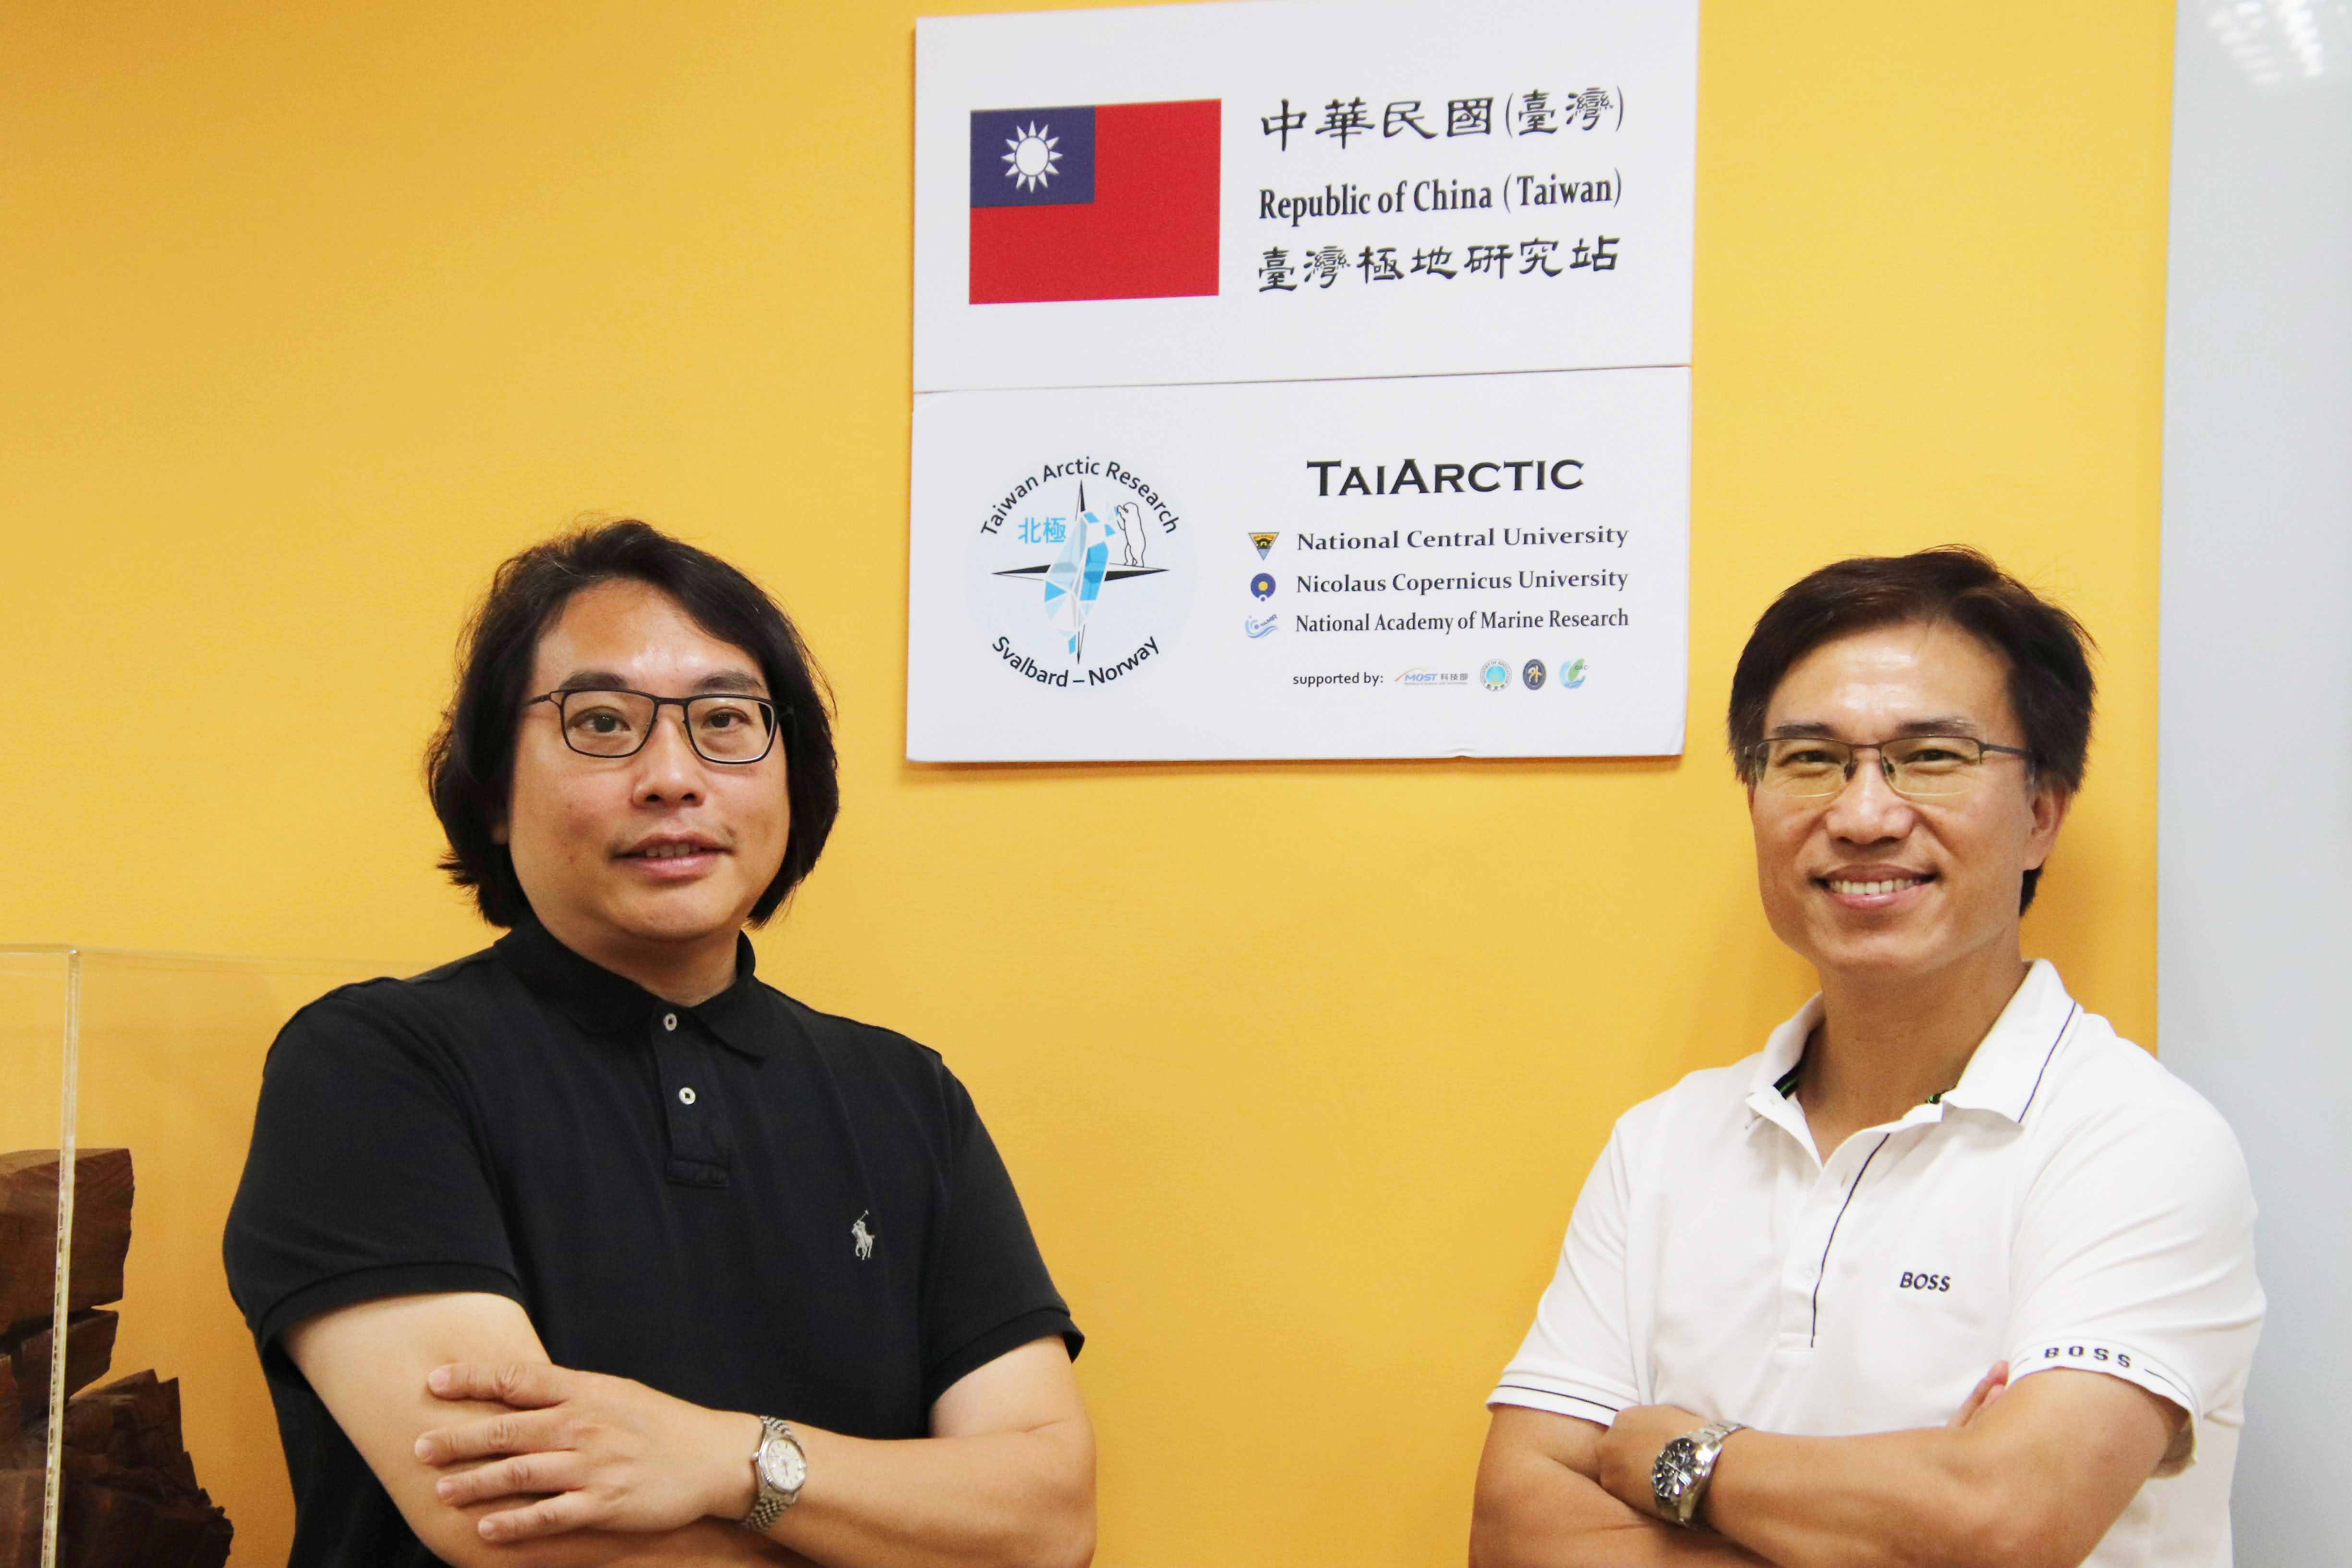 中央大學在跨足北極圈三年研究之後，正式成立「台灣極地研究中心」（Taiwan Polar Institute）。右為首任中心主任倪春發教授，左為副主任錢樺教授。林彥岑攝